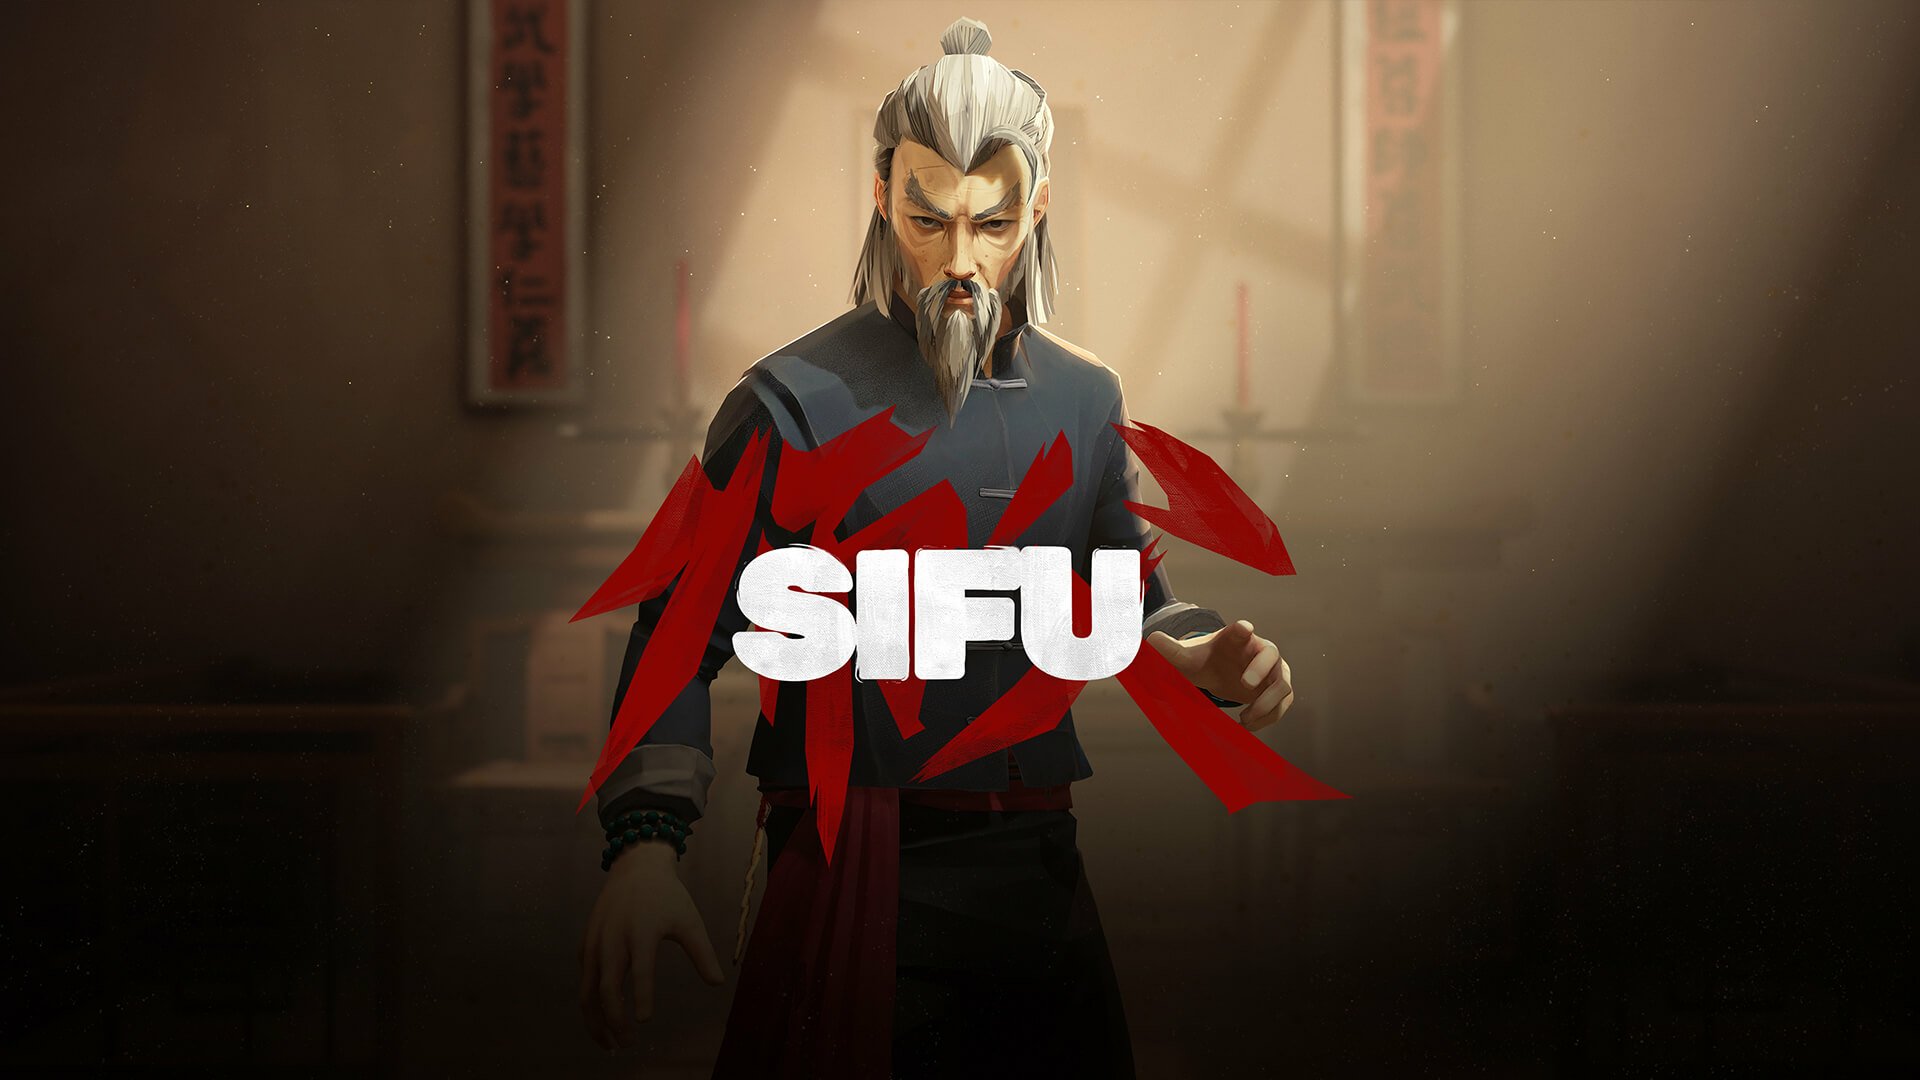 O jogo de artes marciais Sifu ganhou data de lançamento para fevereiro com seu novo trailer.